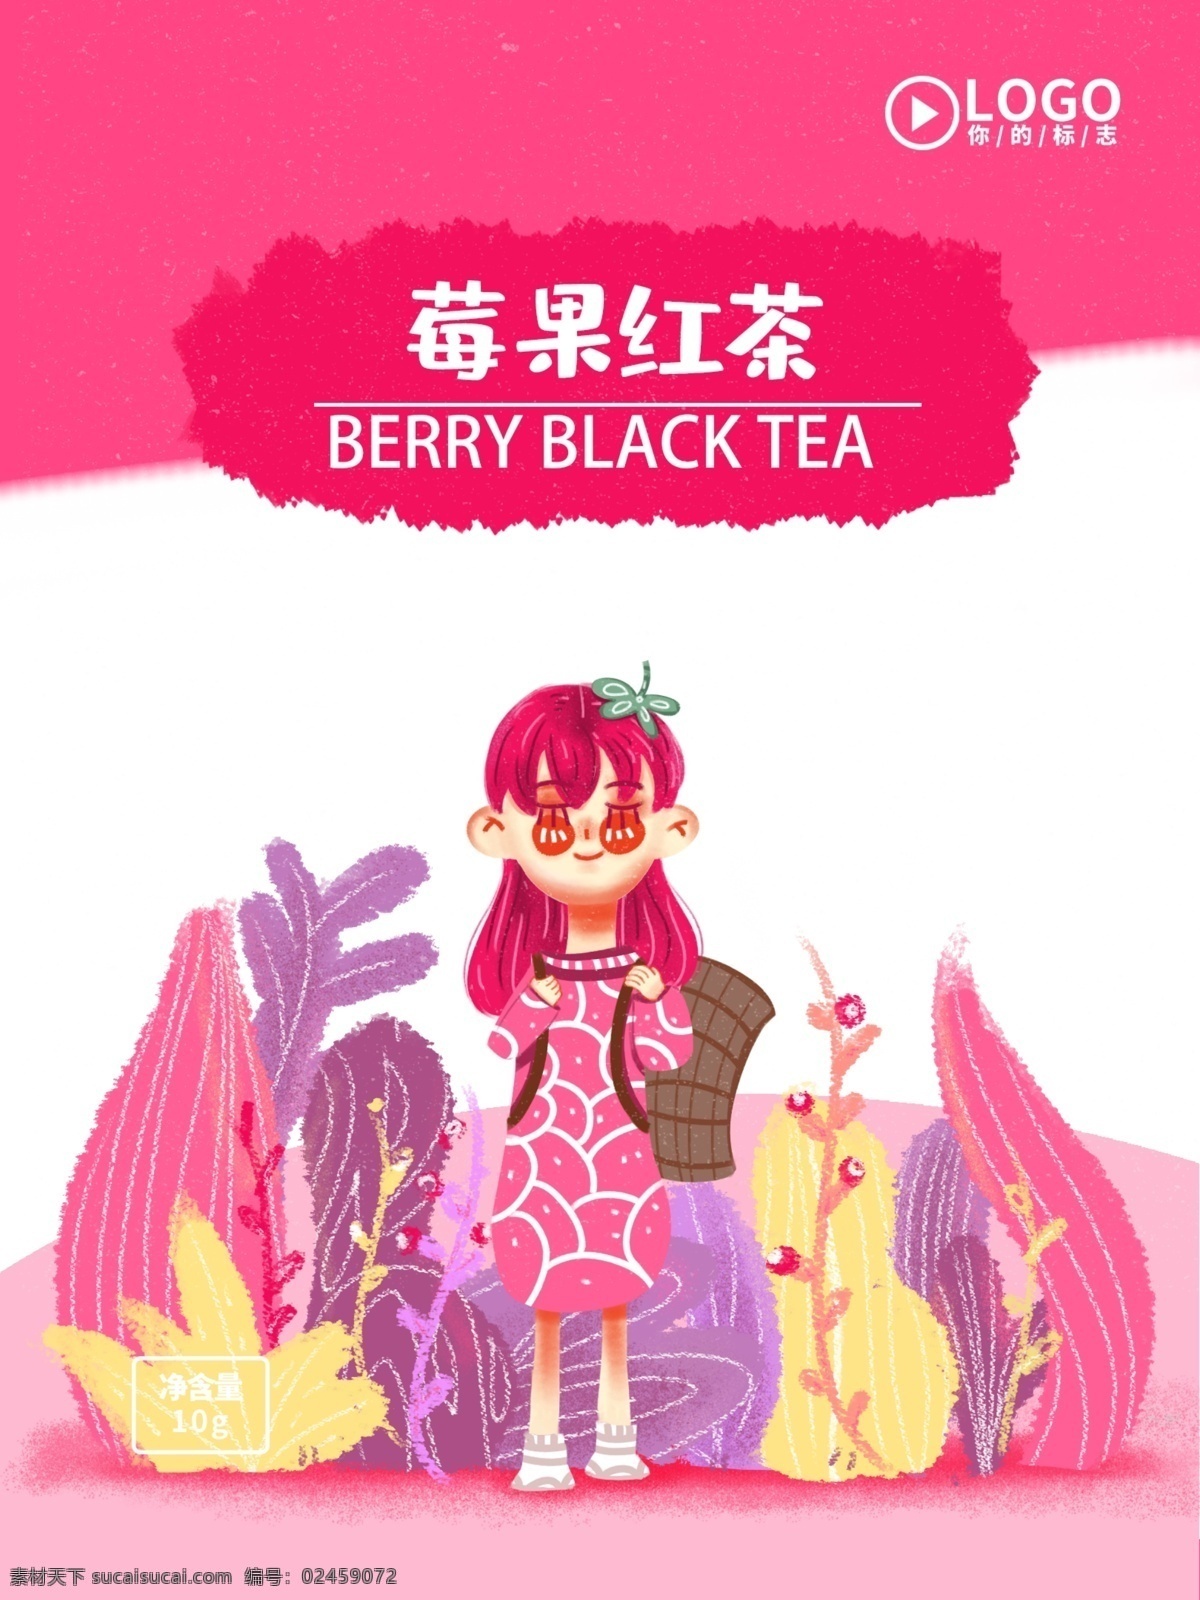 莓 果 红茶 茶叶 包装 可爱 卡通 治愈 小 清新 莓果红茶 茶叶包装 包装设计 食品包装 休闲